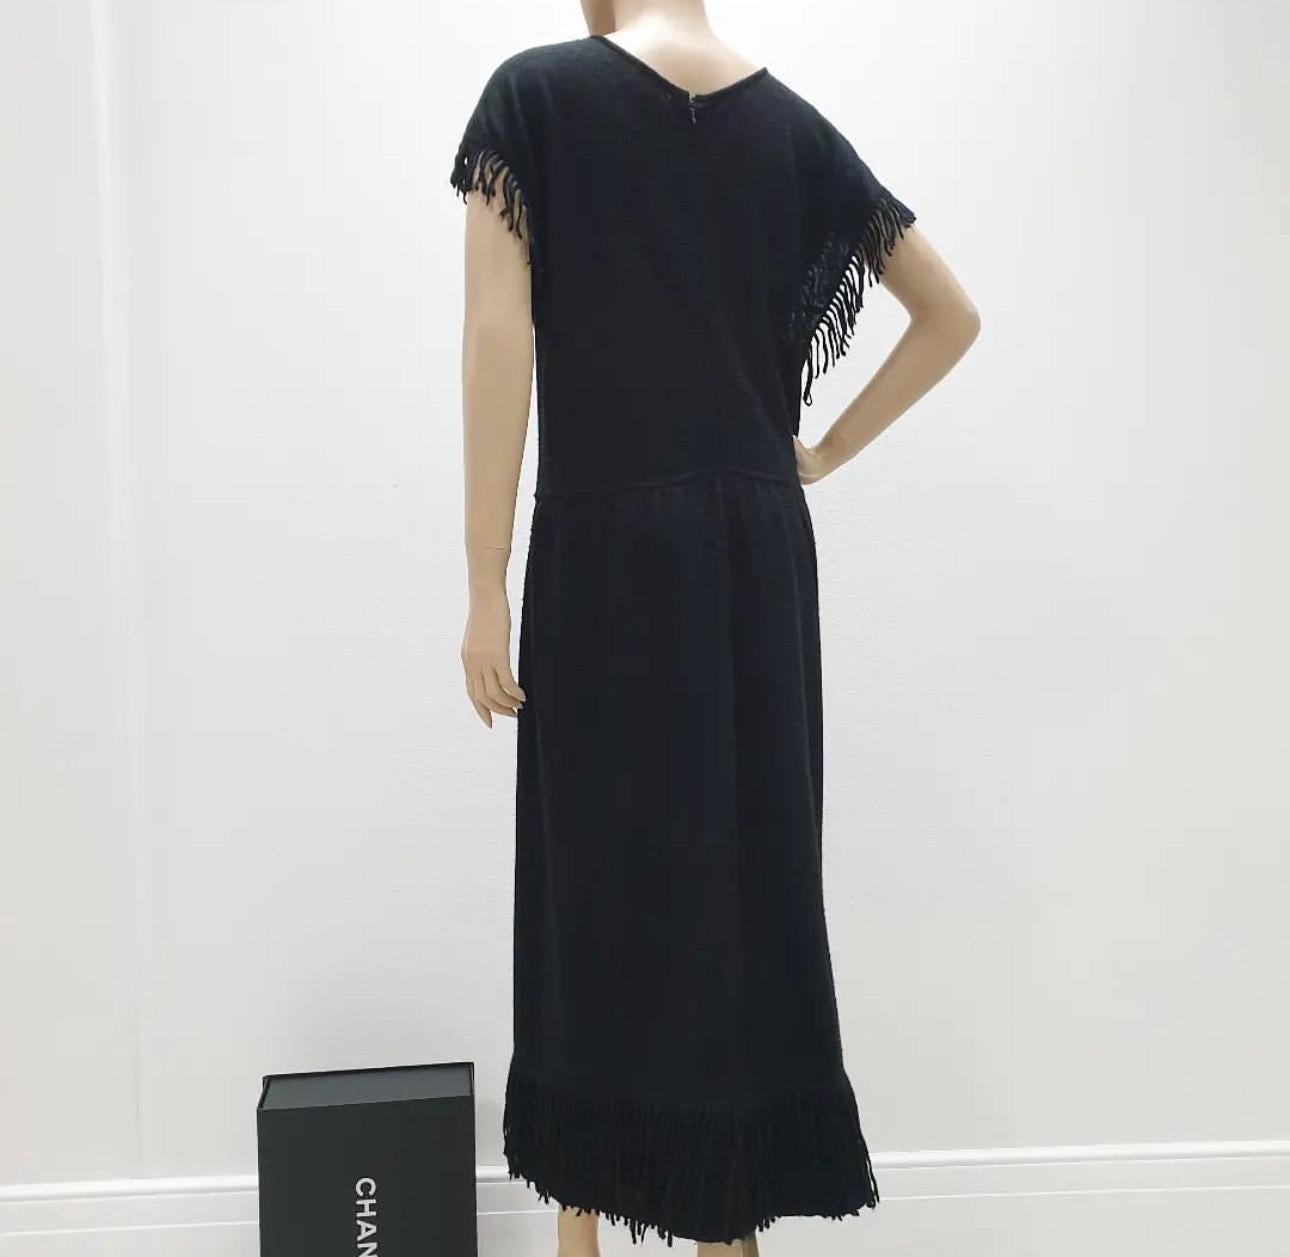 Schwarzes Chanel Kleid aus einer Mohair- und Kaschmirmischung mit Rundhalsausschnitt, ineinandergreifender CC-Logo-Plakette an der Taille, Fransenbesatz im gesamten Bereich und verdecktem Reißverschluss am Rücken.

Schönes Chanel Schwarzes